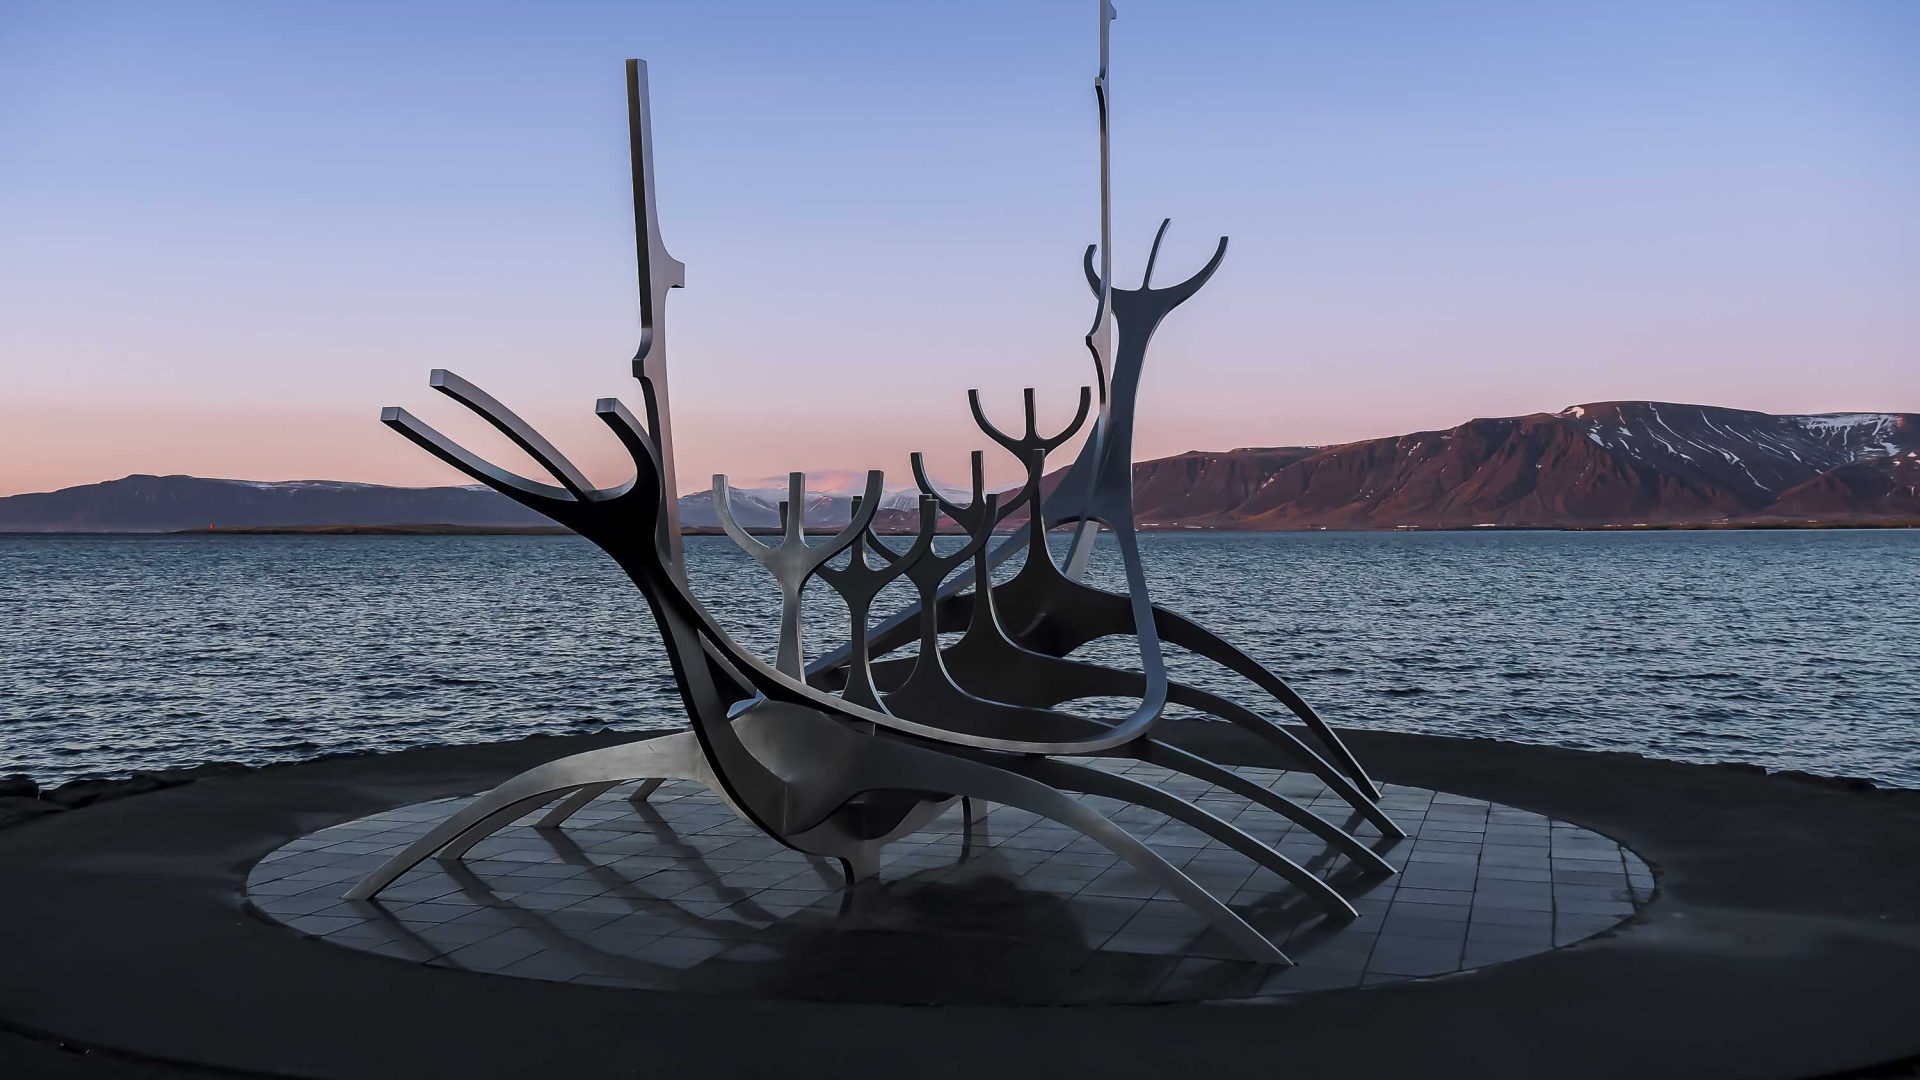 A viking ship sculpture seen in low light.